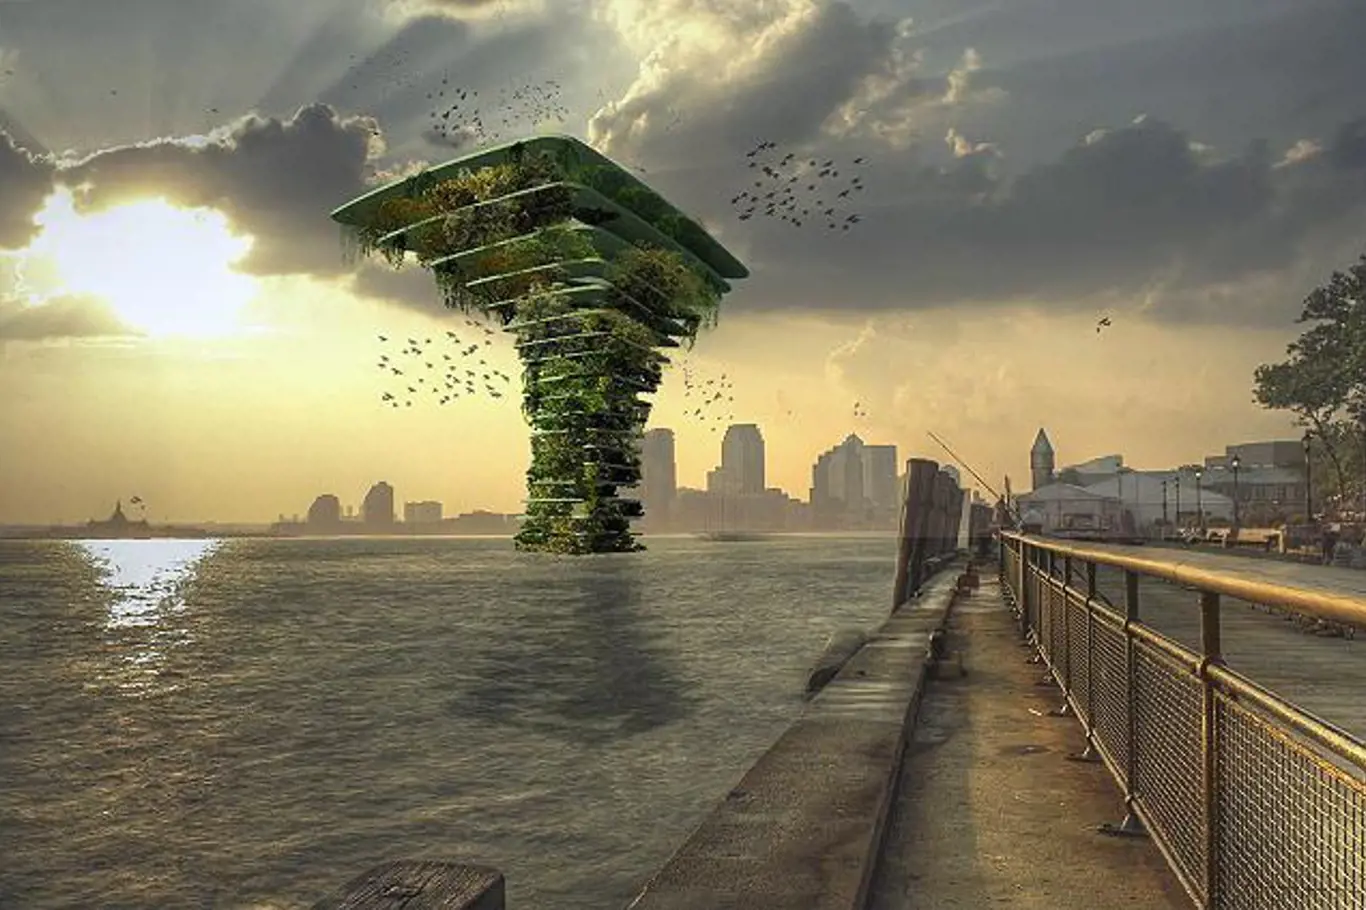 Koen Olthuis z architektonického studia Waterstudio navrhl nový unikátní projekt určený pro ekologický vodní development v pobřežních městech po celém světě.